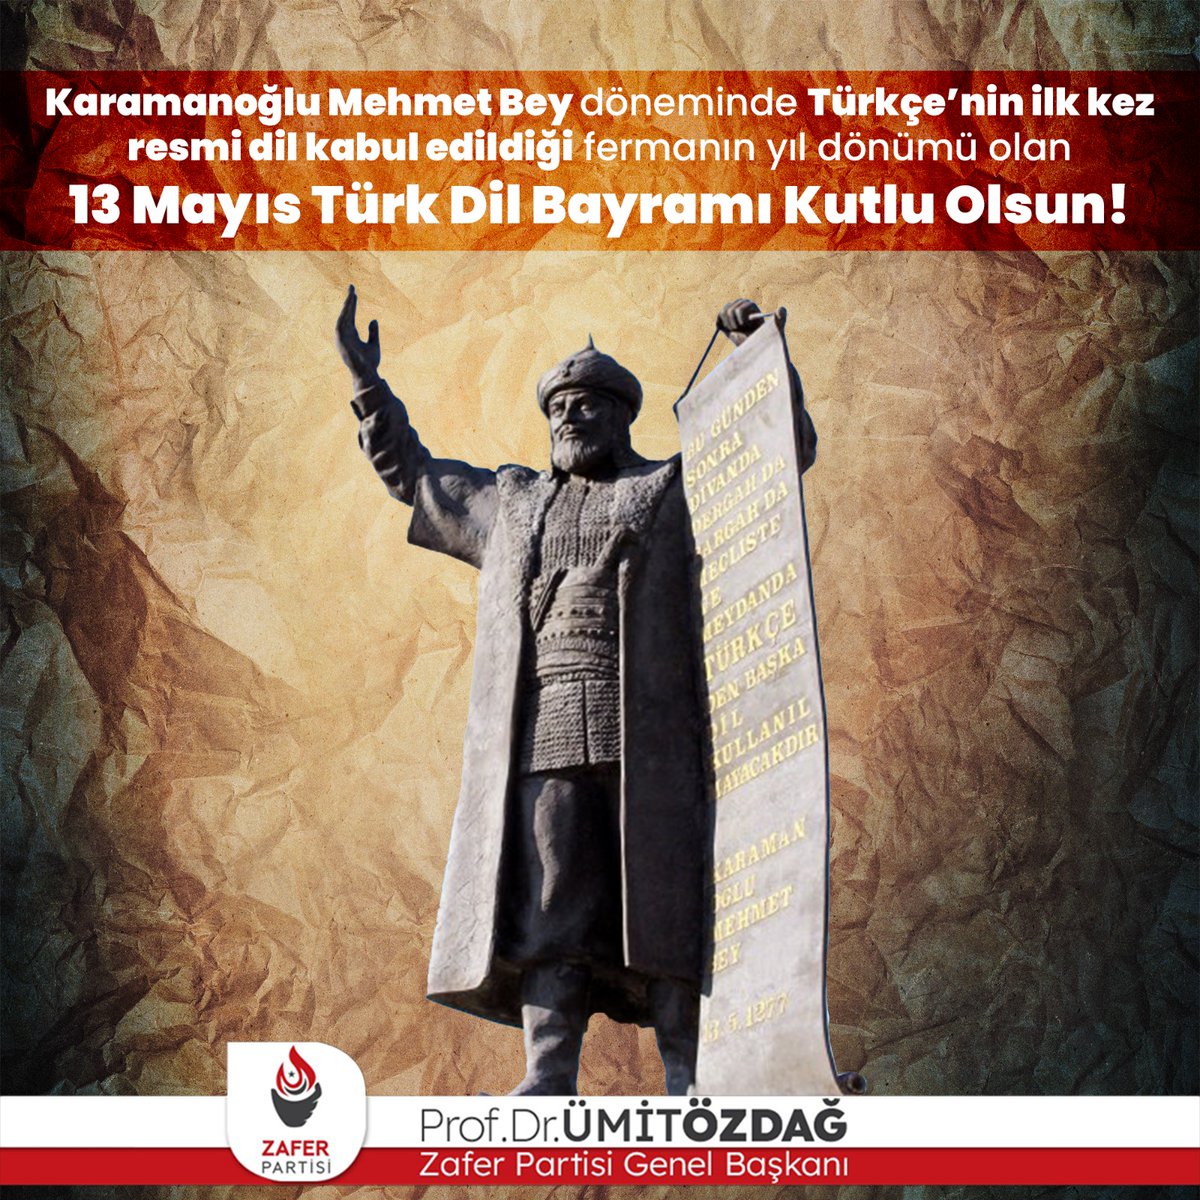 Karamanoğlu Mehmet Bey döneminde Türkçe'nin ilk kez resmi dil kabul edildiği fermanın yıl dönümü olan 13 Mayıs Türk Dil Bayramı Kutlu Olsun